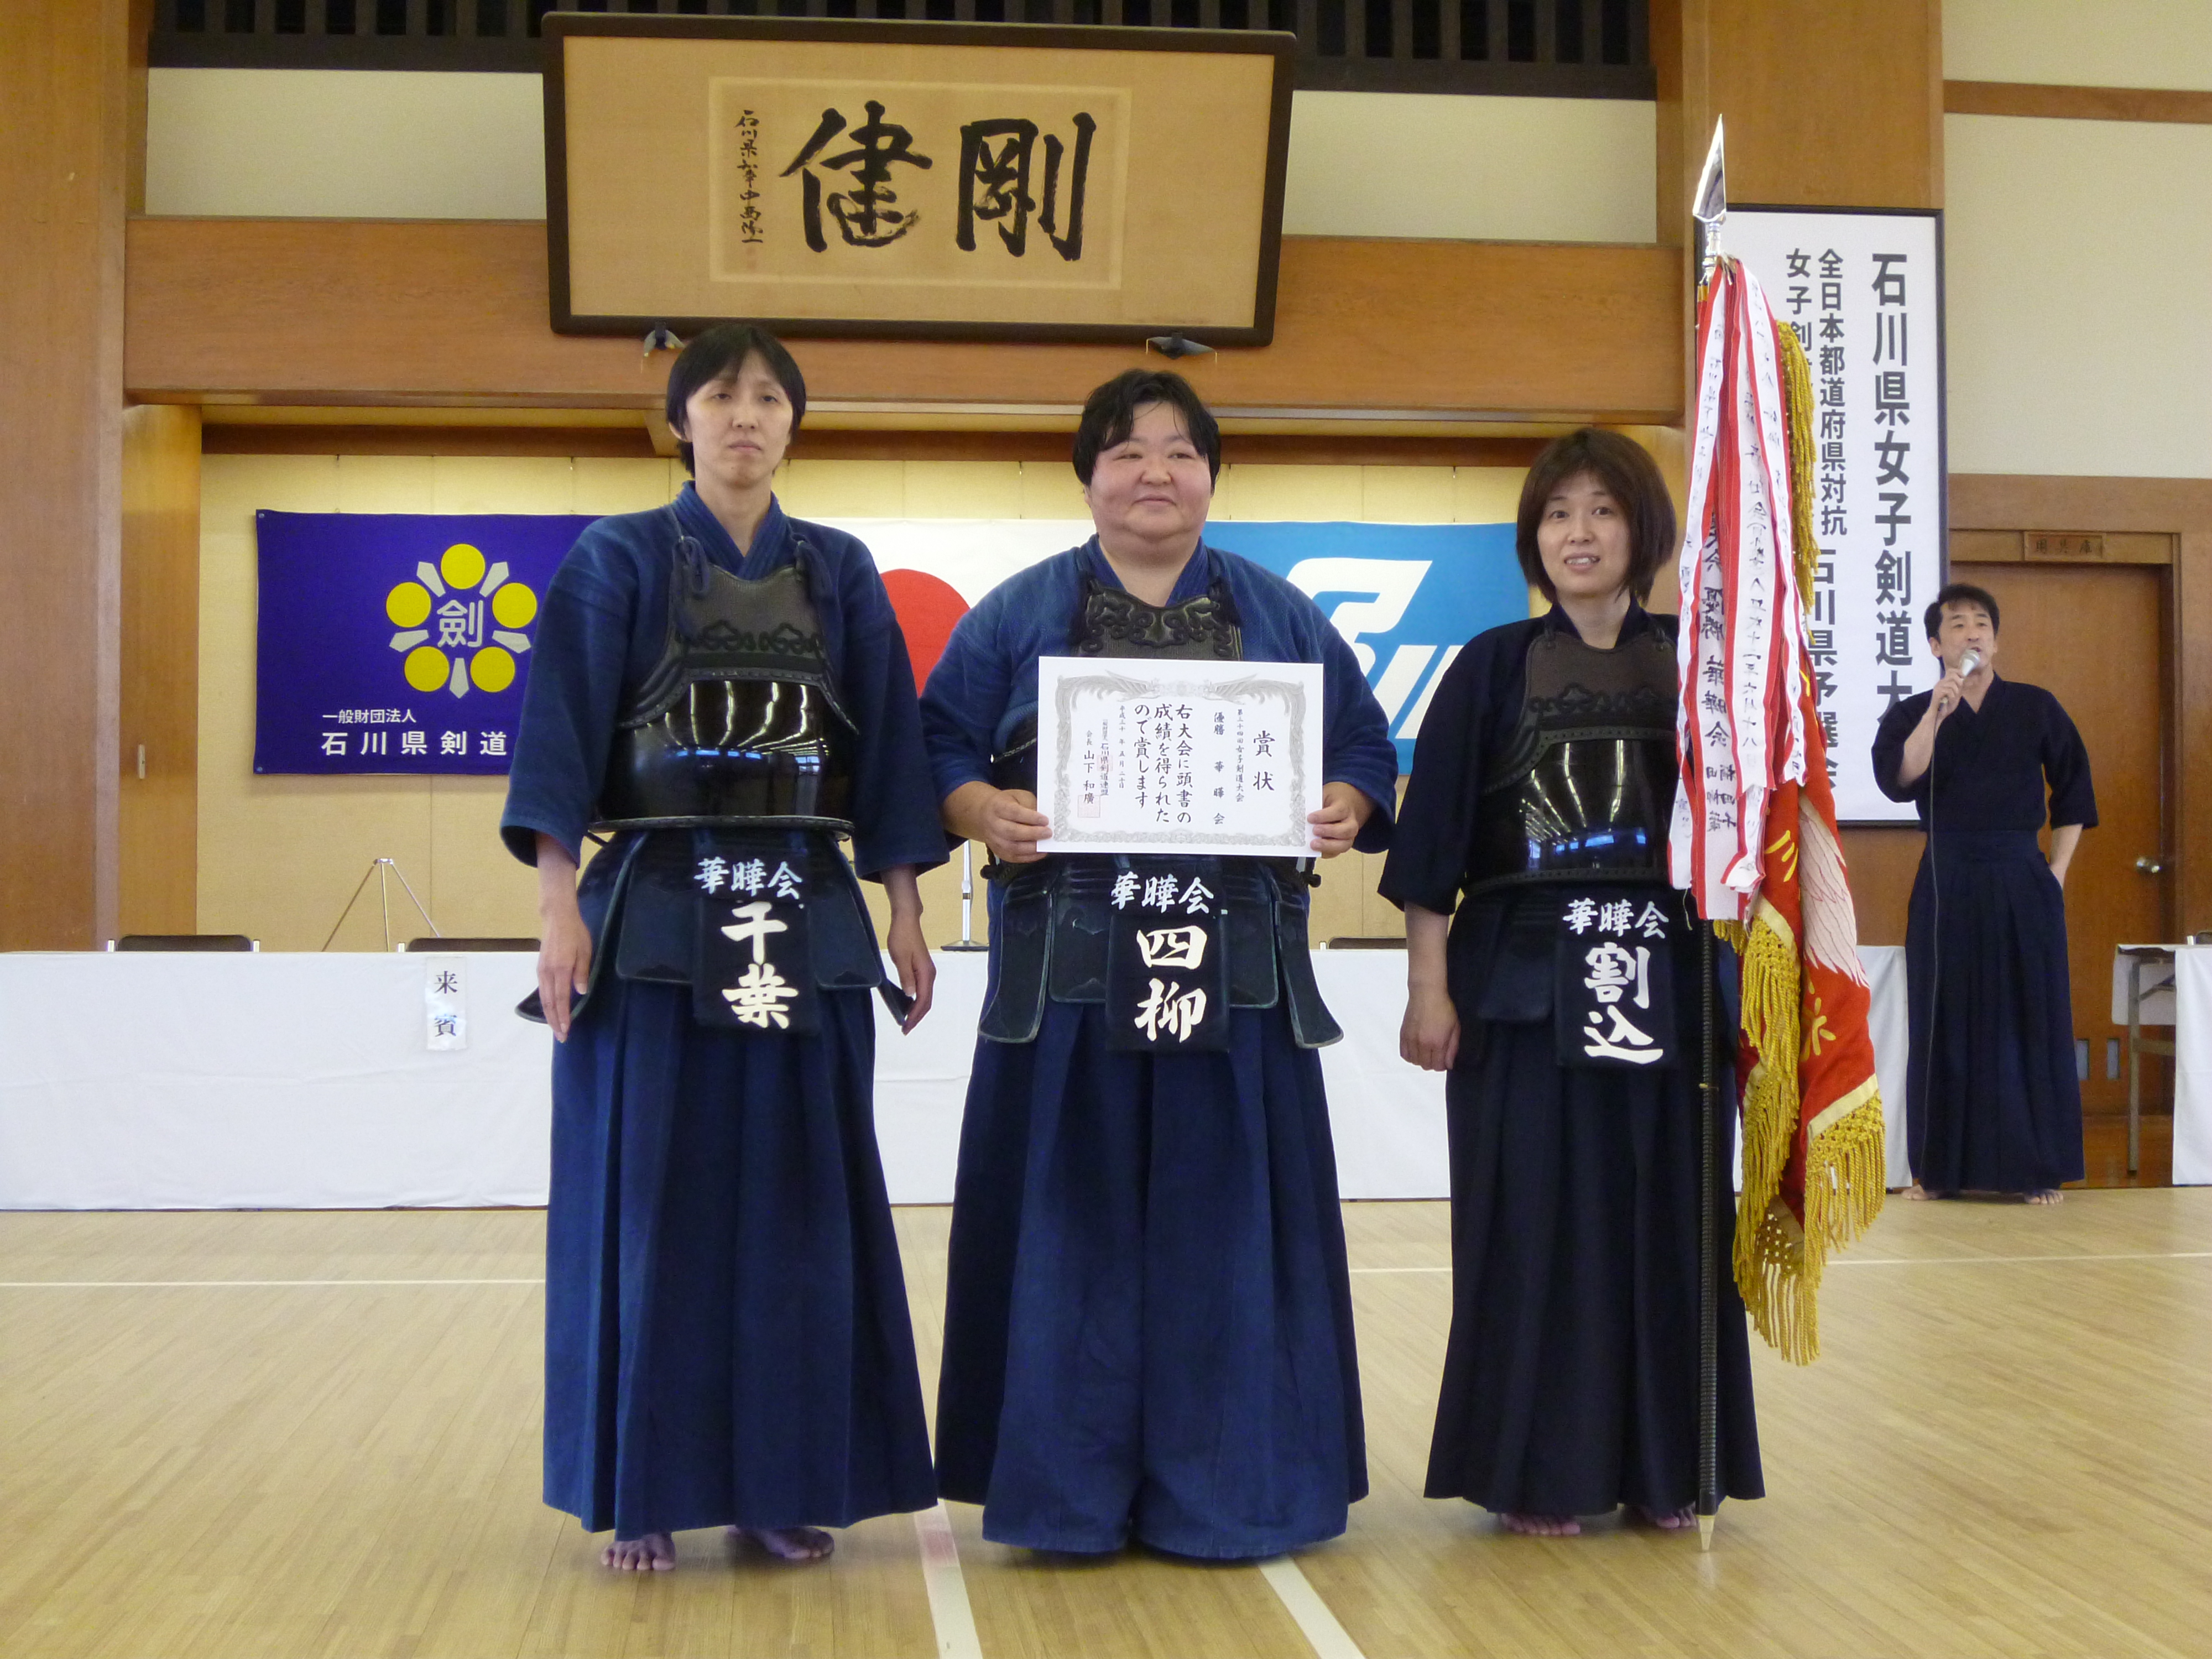 新着情報 石川県剣道連盟